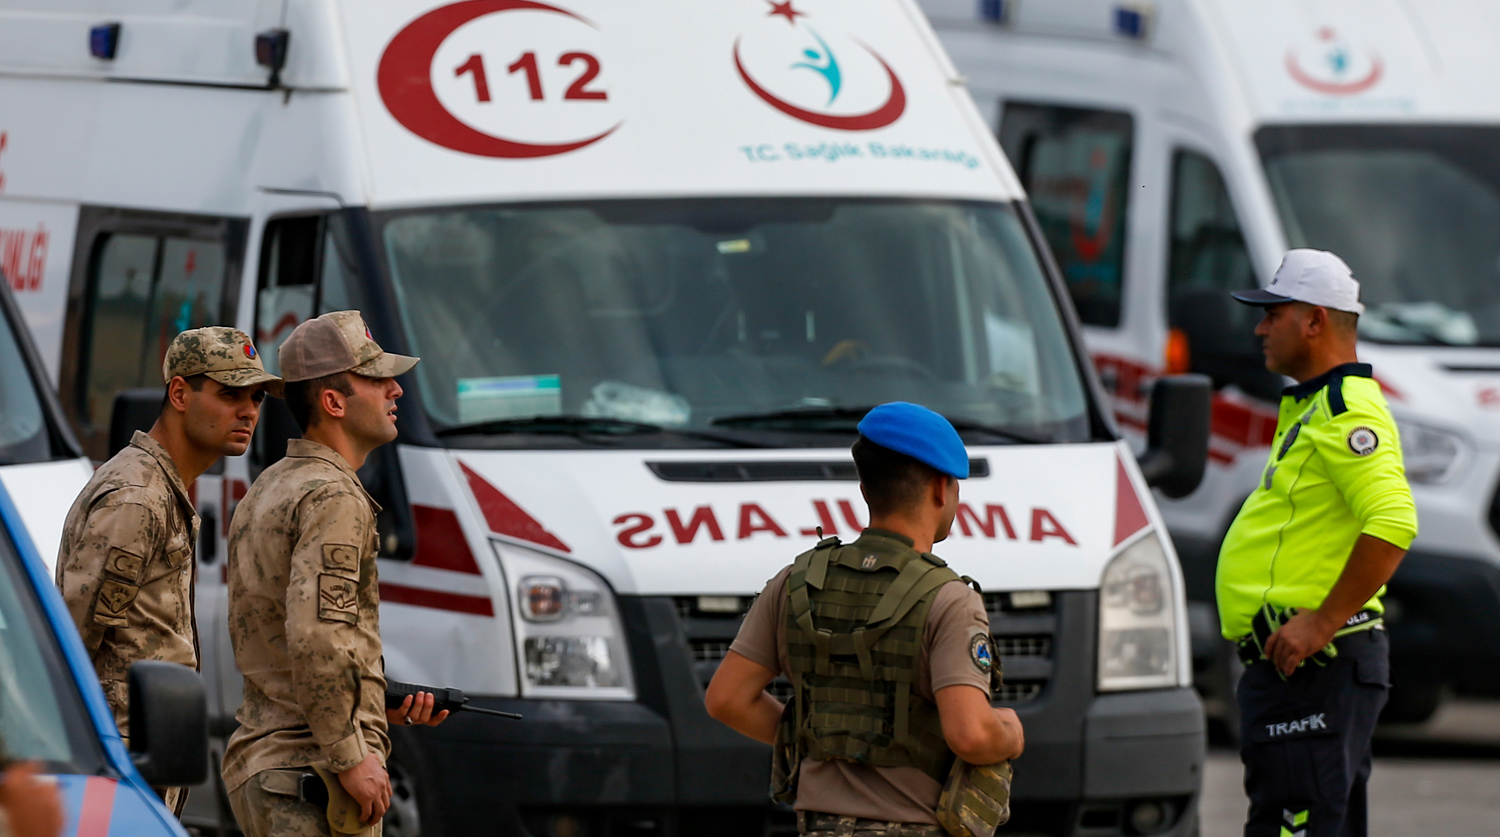 TRT Haber: при взрыве в Турции пострадали семь человек